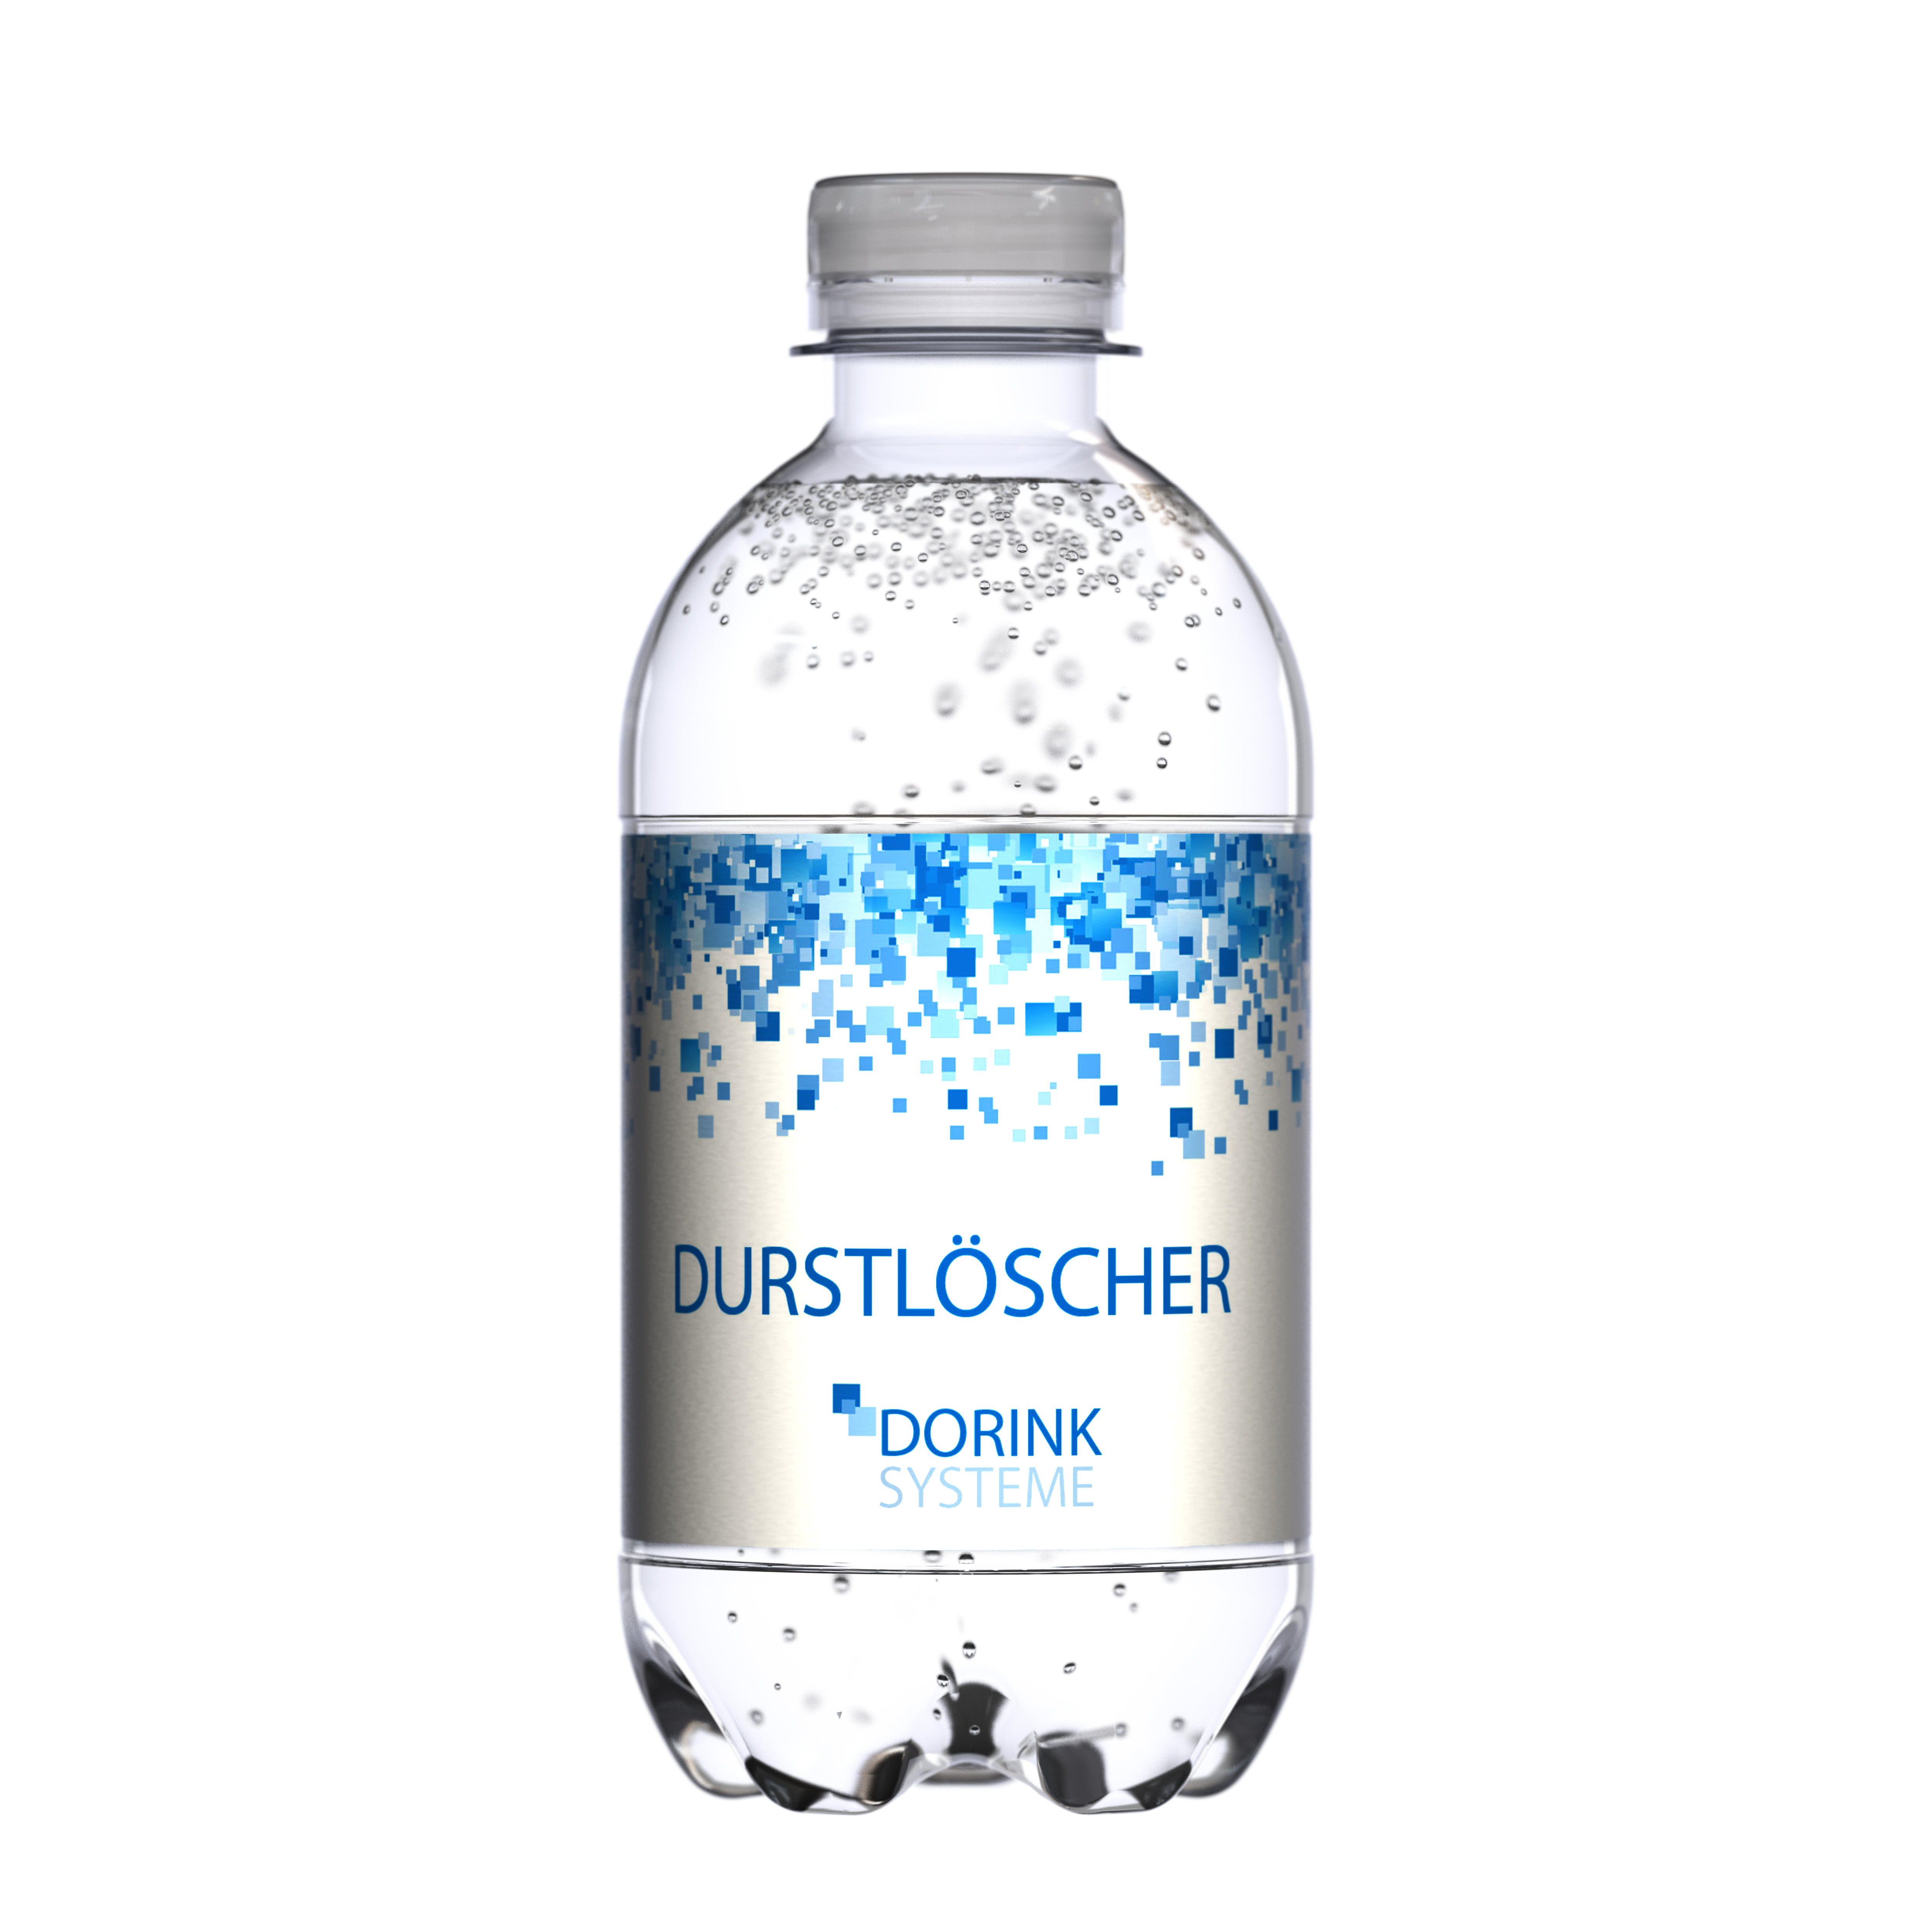 330 ml Mineralwasser spritzig (Flasche Classic) - Smart Label